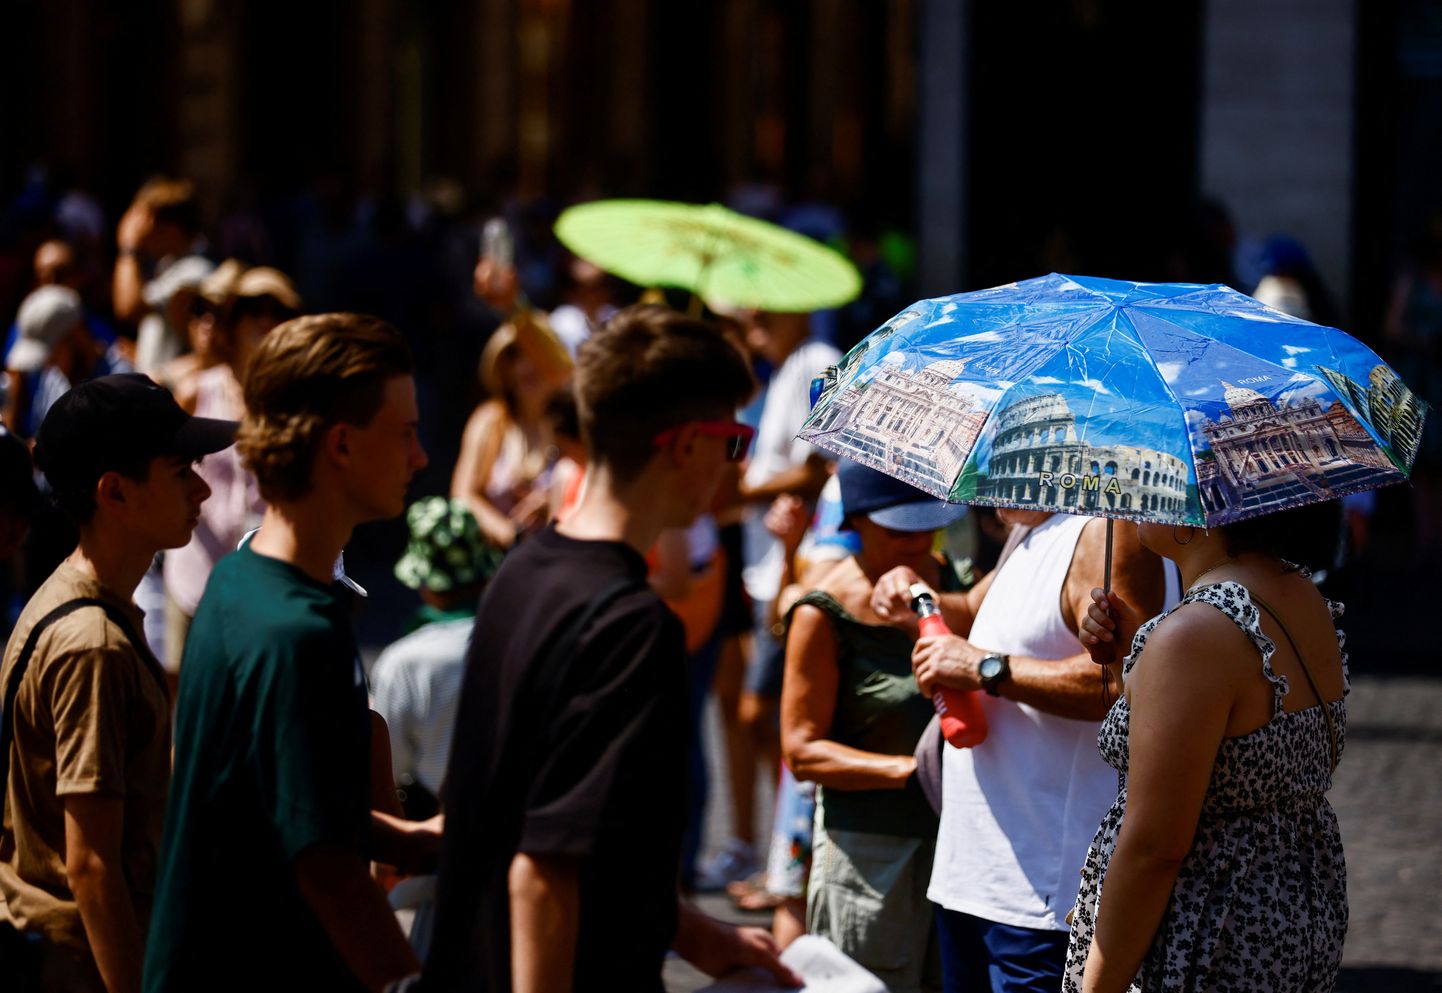 Inimesed kannavad kuumal suvepäeval päikesevarje